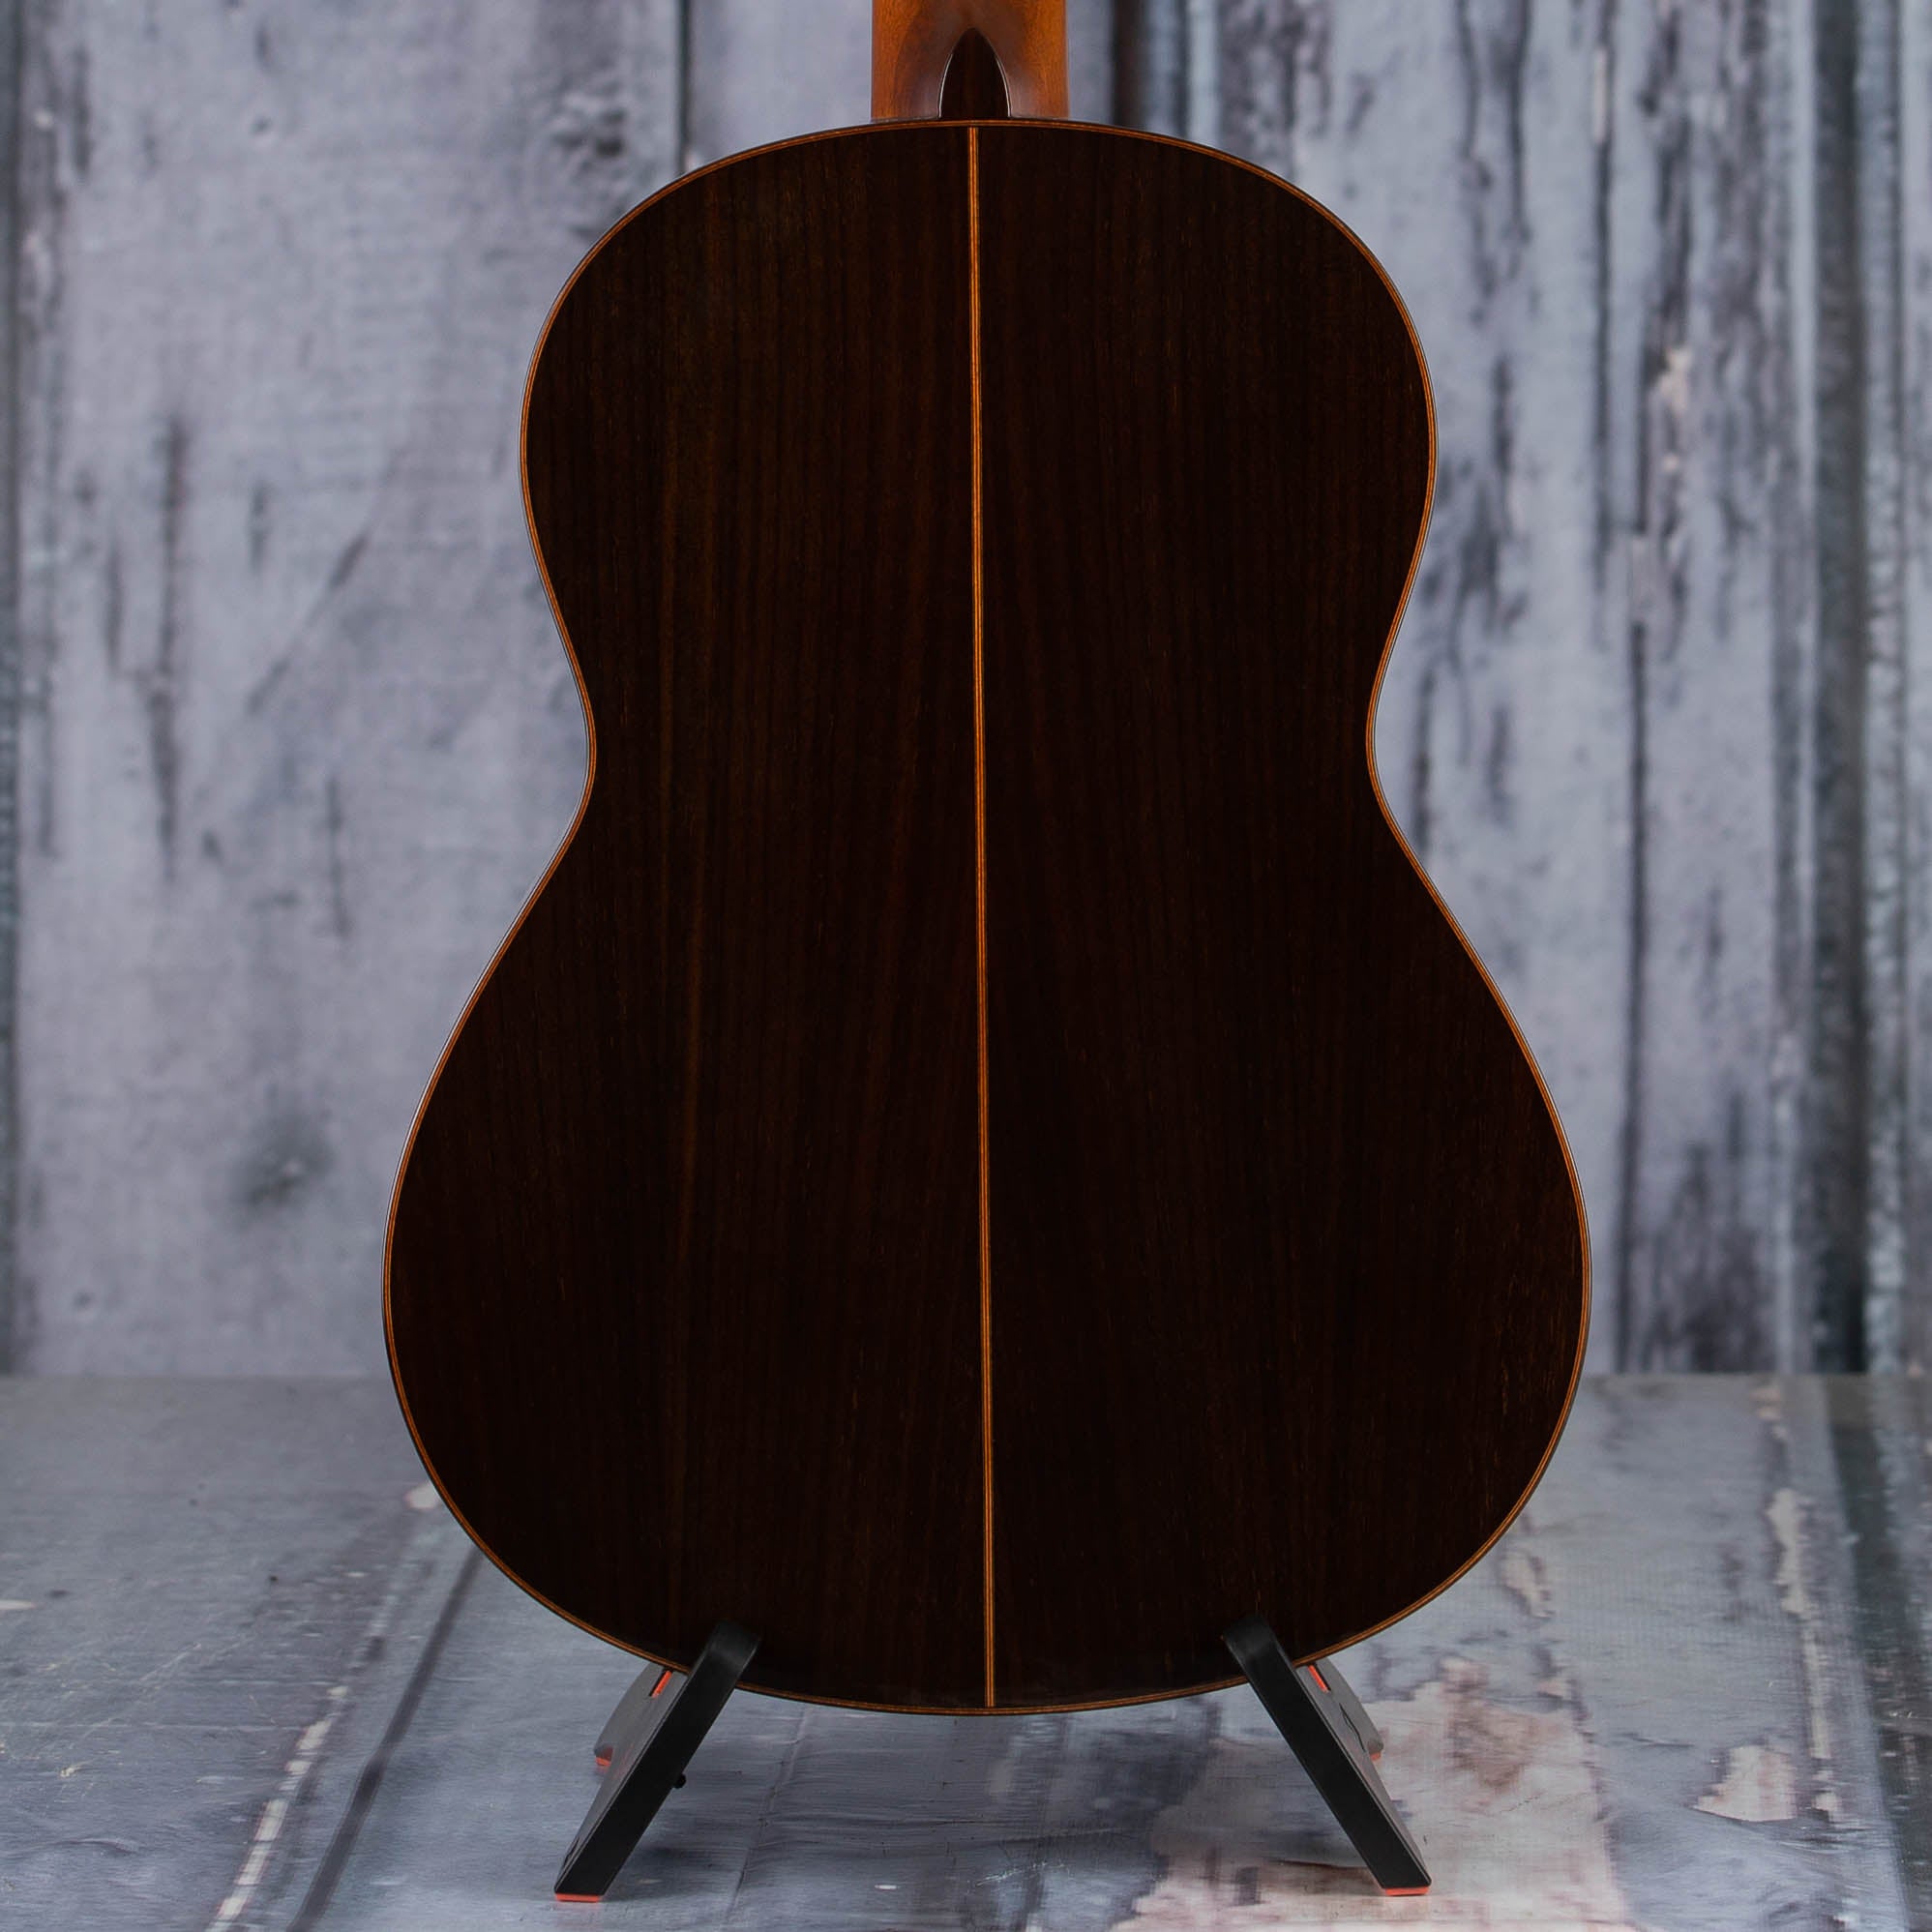 Yamaha CG182S Classical Acoustic Guitar, Natural, back closeup